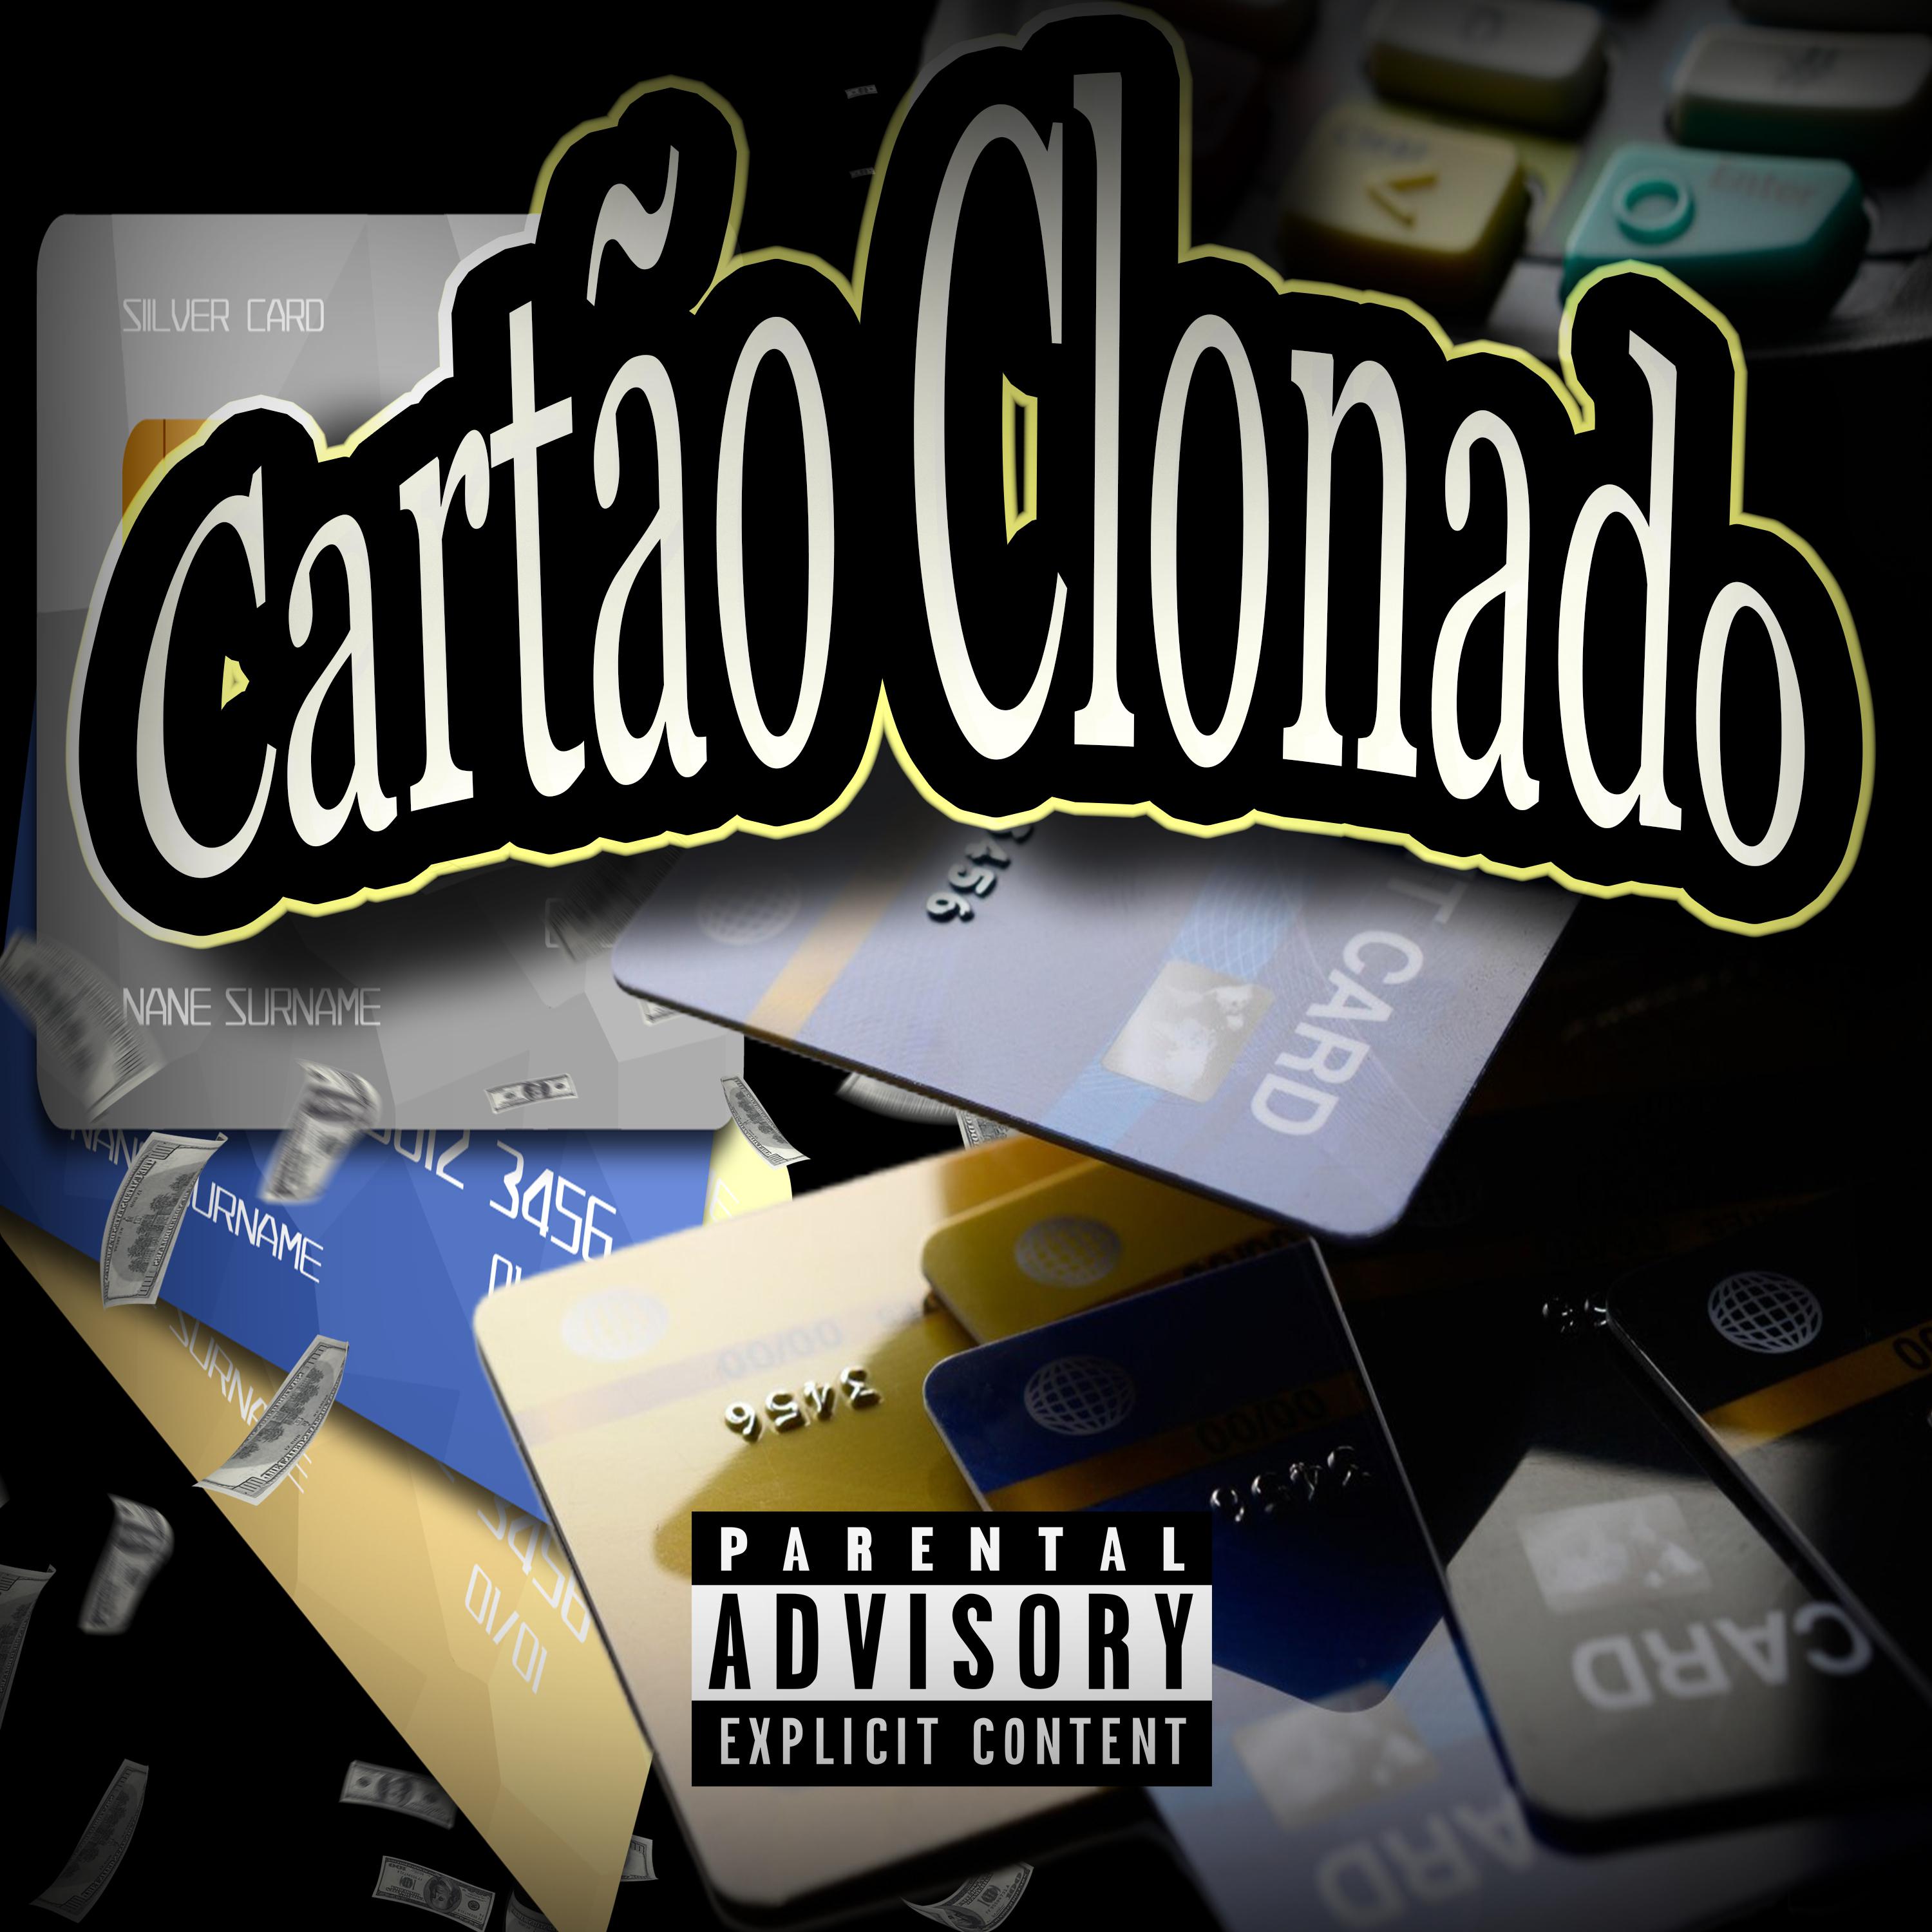 Постер альбома Cartão Clonado